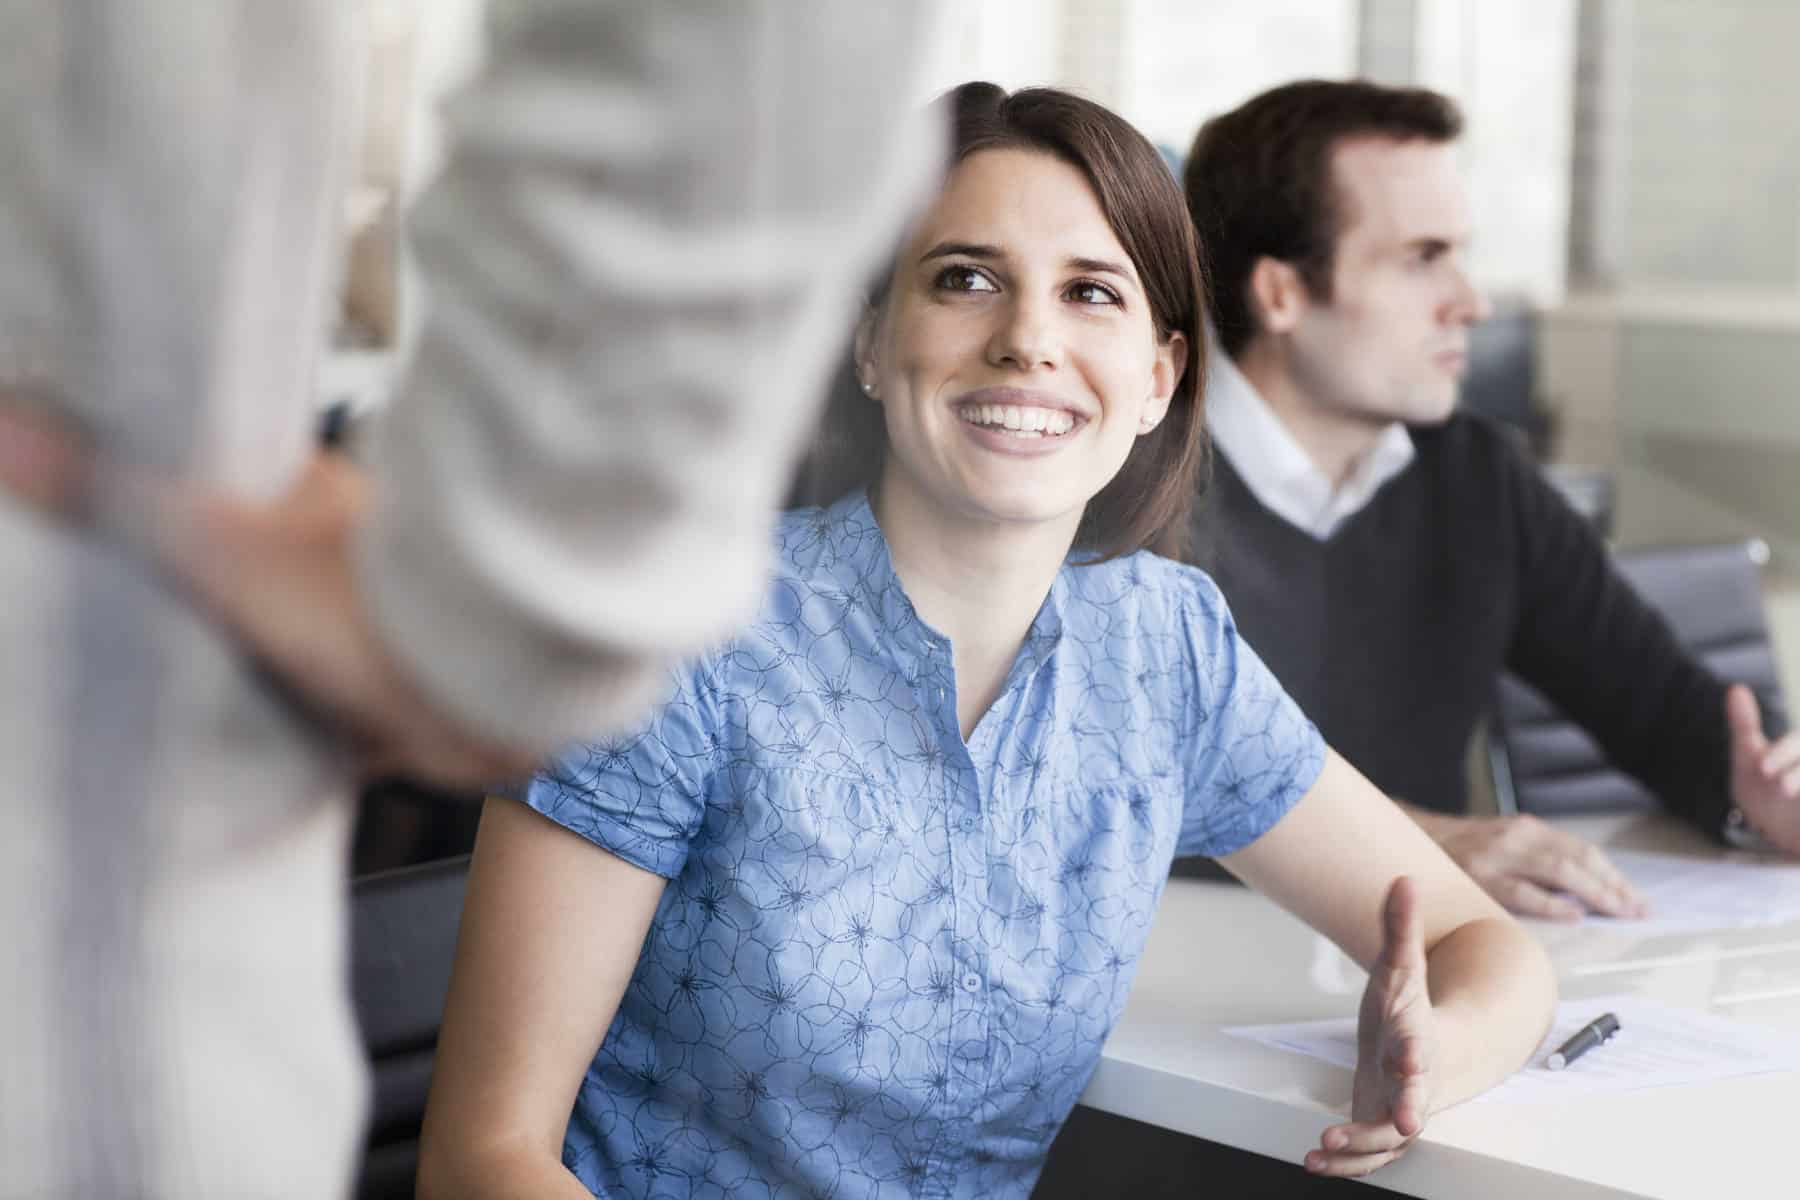 Lächelnde junge Frau mit Business-Bluse im Gespräch mit einem Kollegen